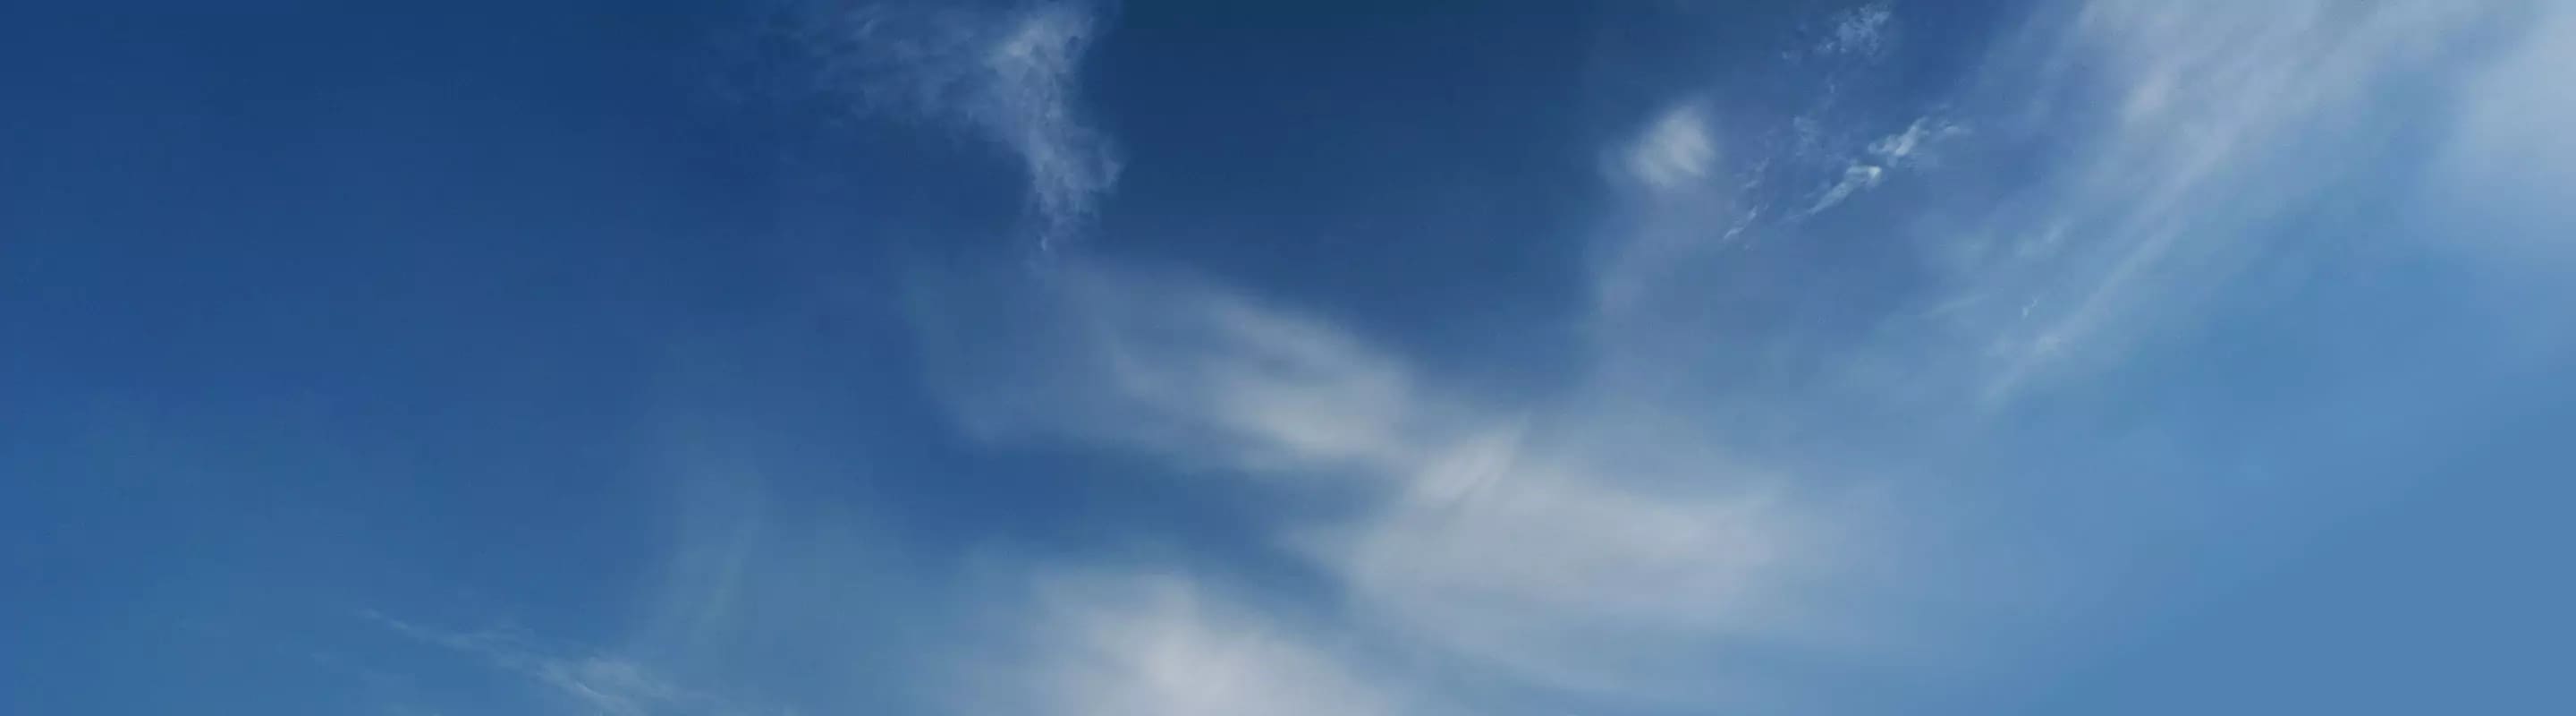 藍藍的天和淡淡的雲